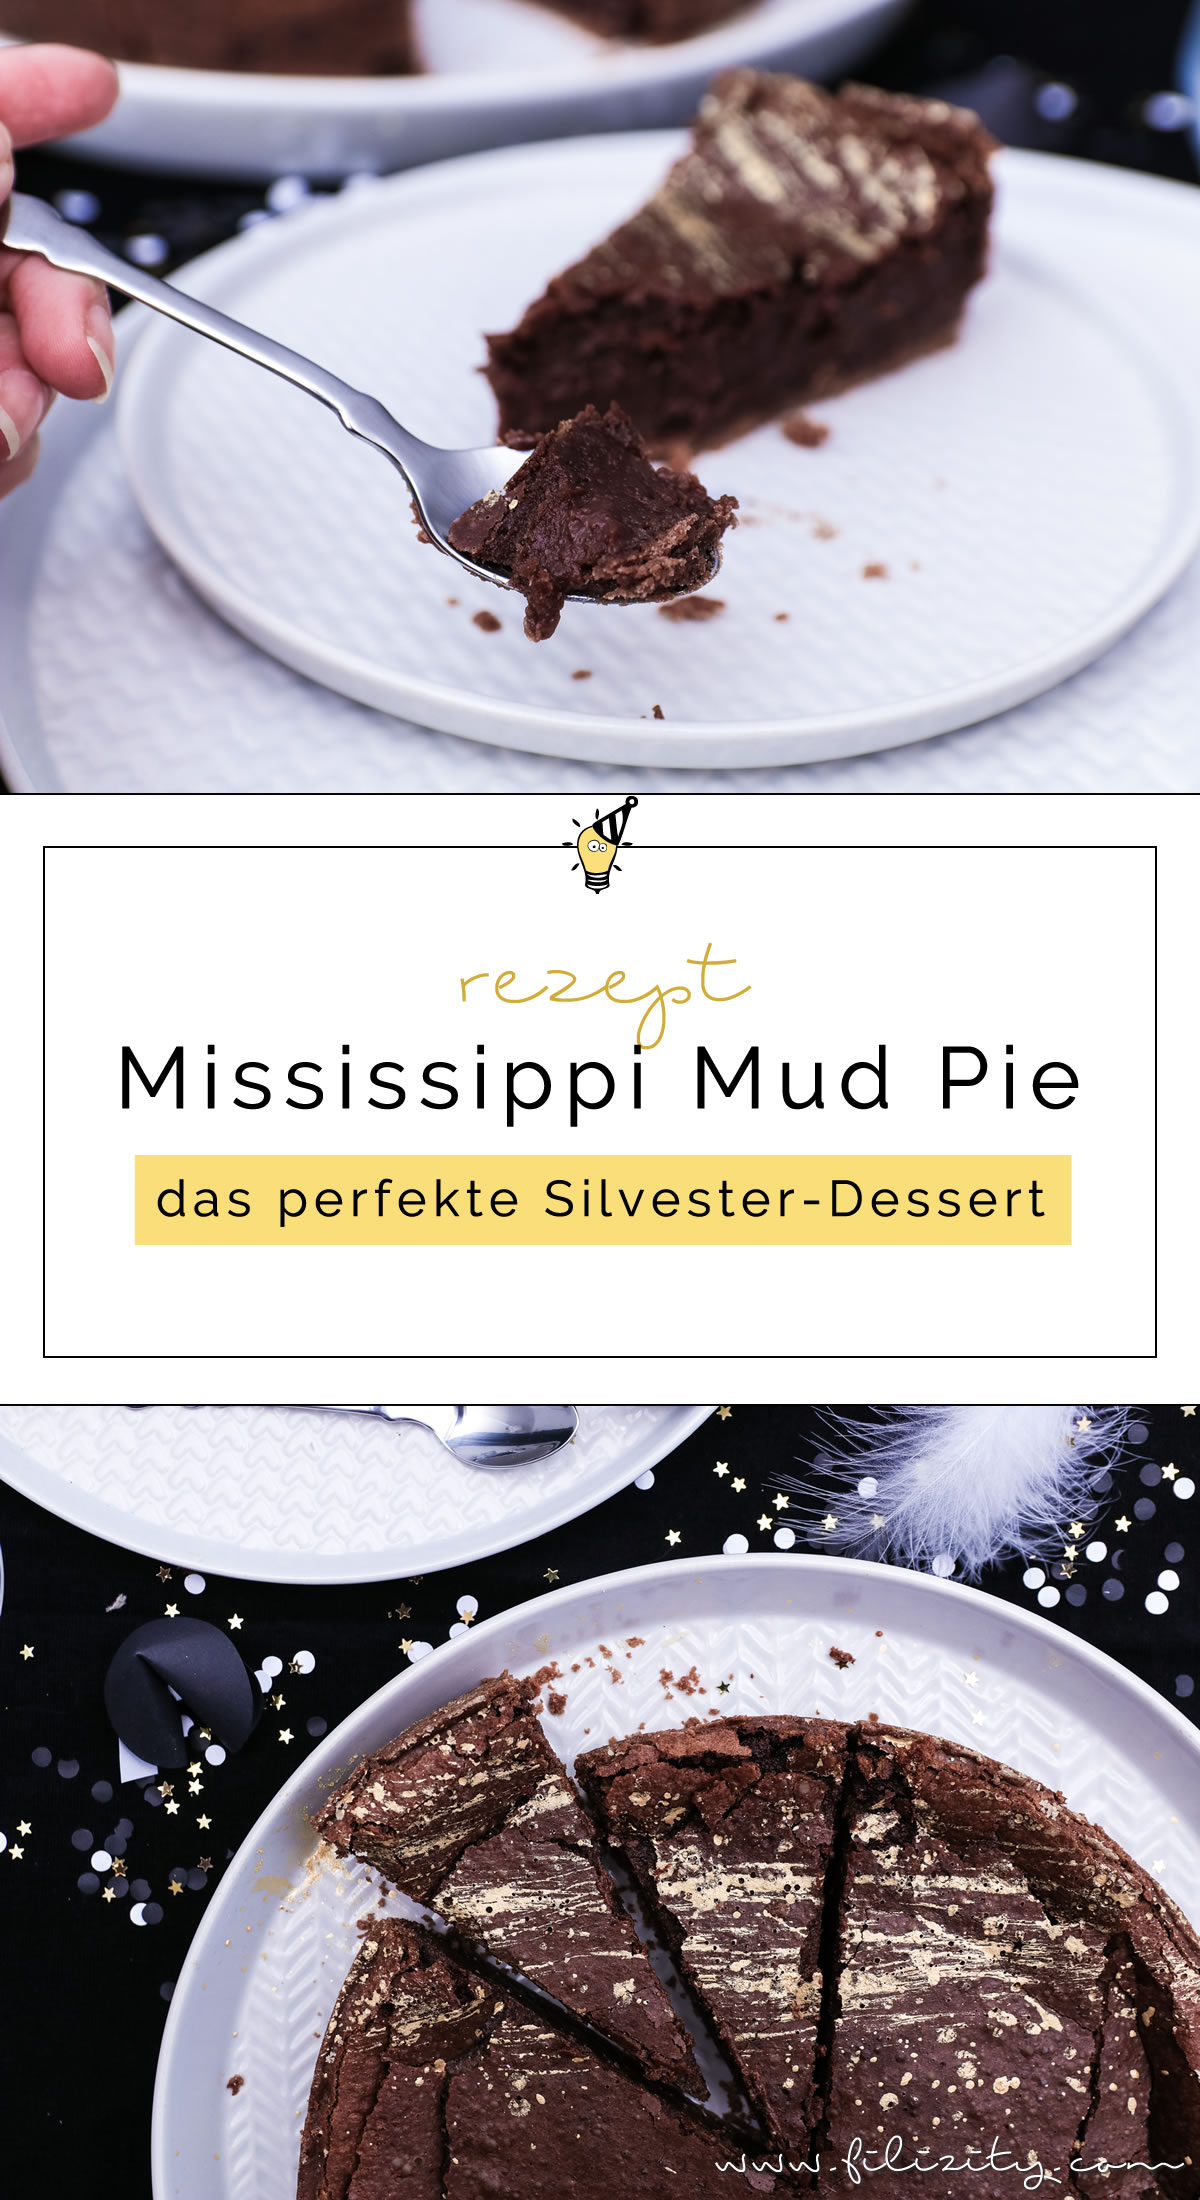 Silvester-Dessert Rezept: Mississippi Mud Pie mit Gold-Dekor backen für Schokoholics | Filizity.com | Food-Blog aus dem Rheinland #nomatterwhatthequestionischocolateistheanswer #silvester #nye #dessert